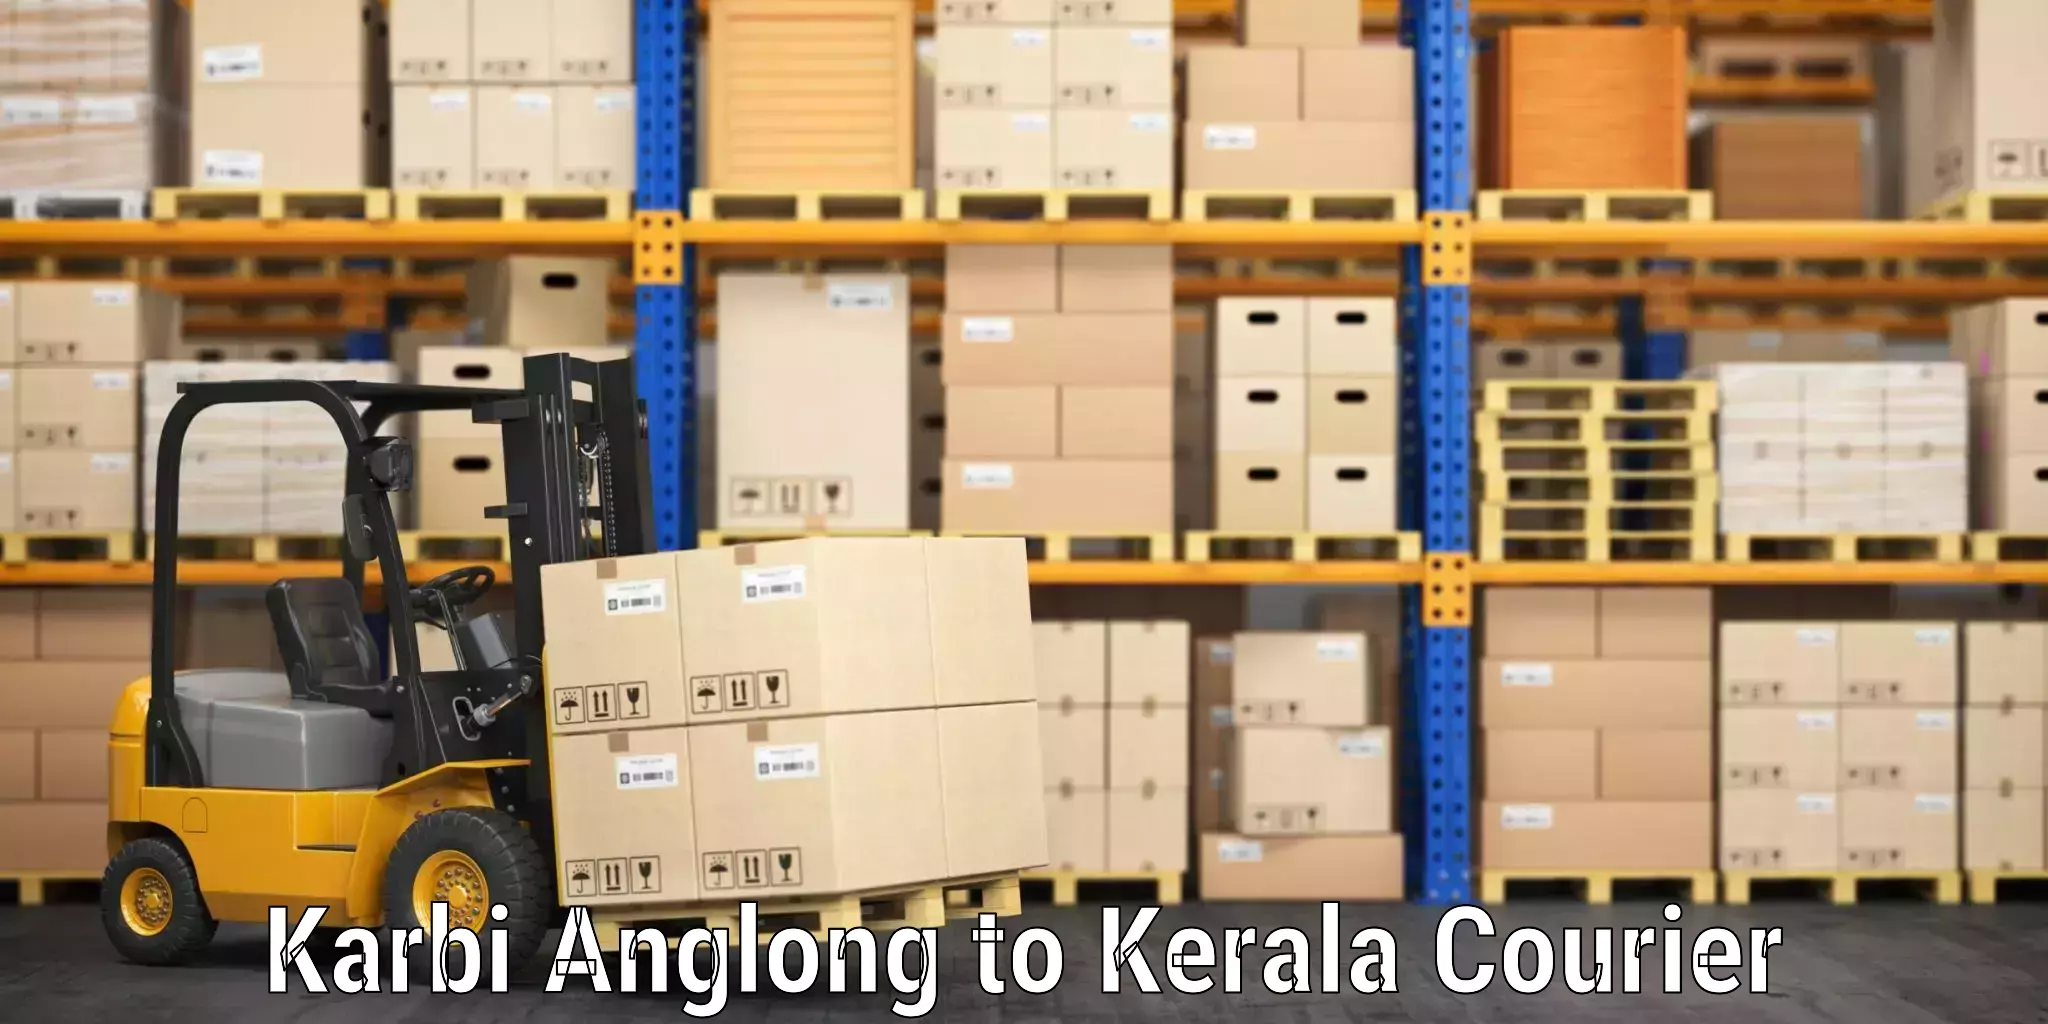 Luggage transit service Karbi Anglong to Kerala